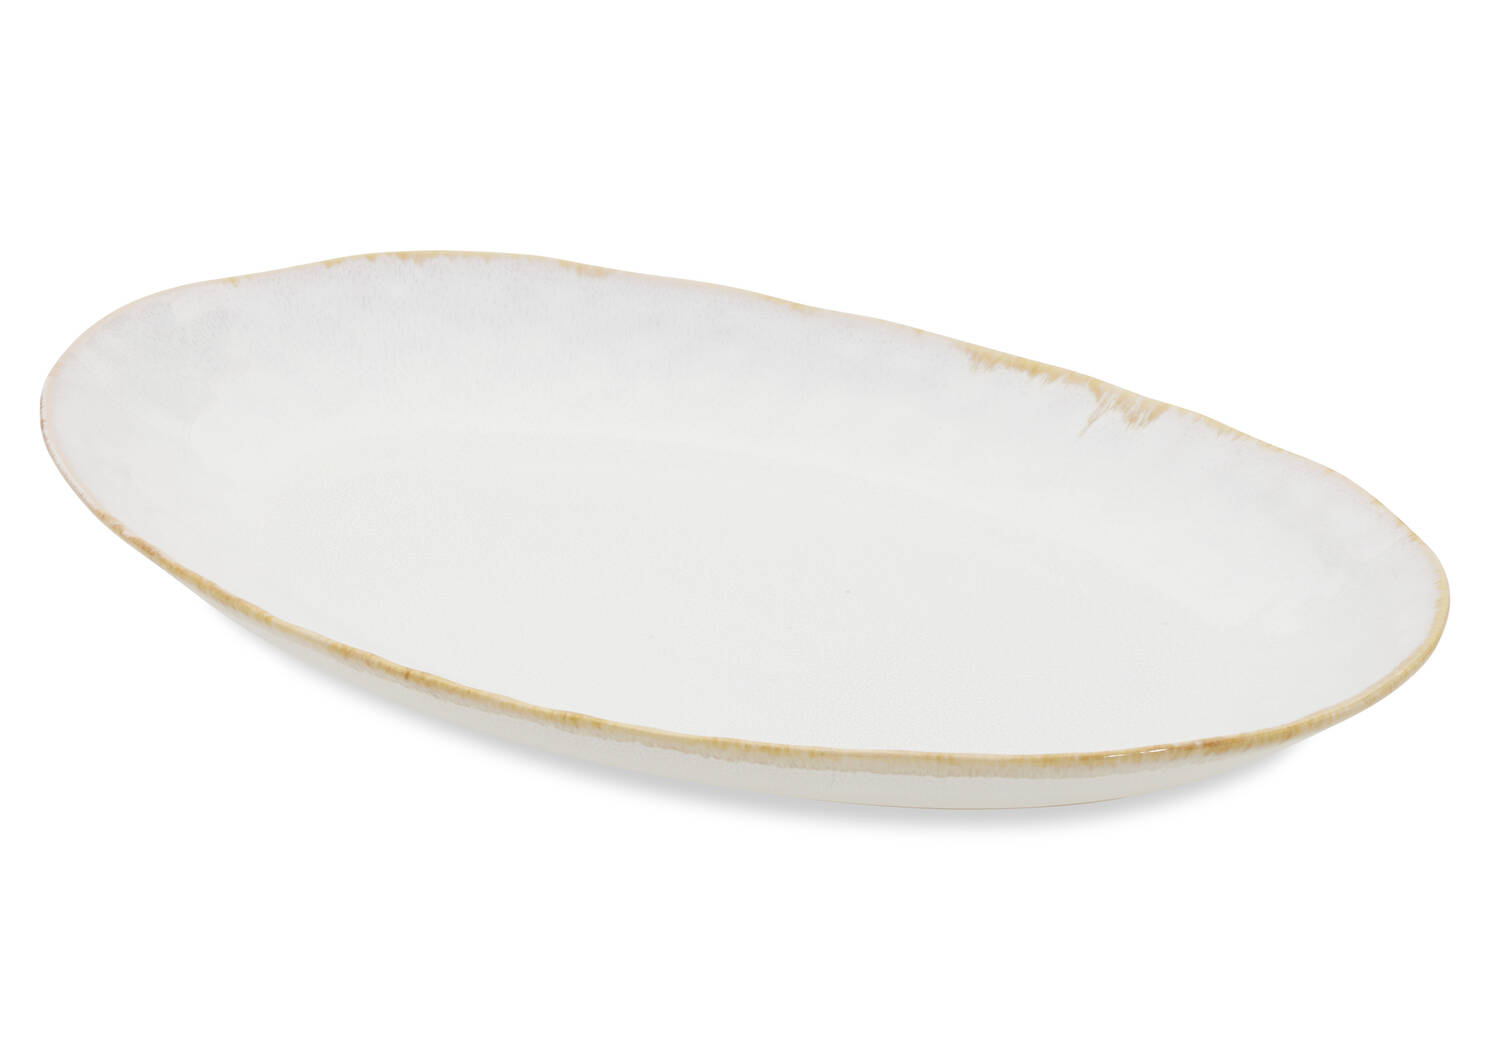 Crofton Glazed Serving Platter